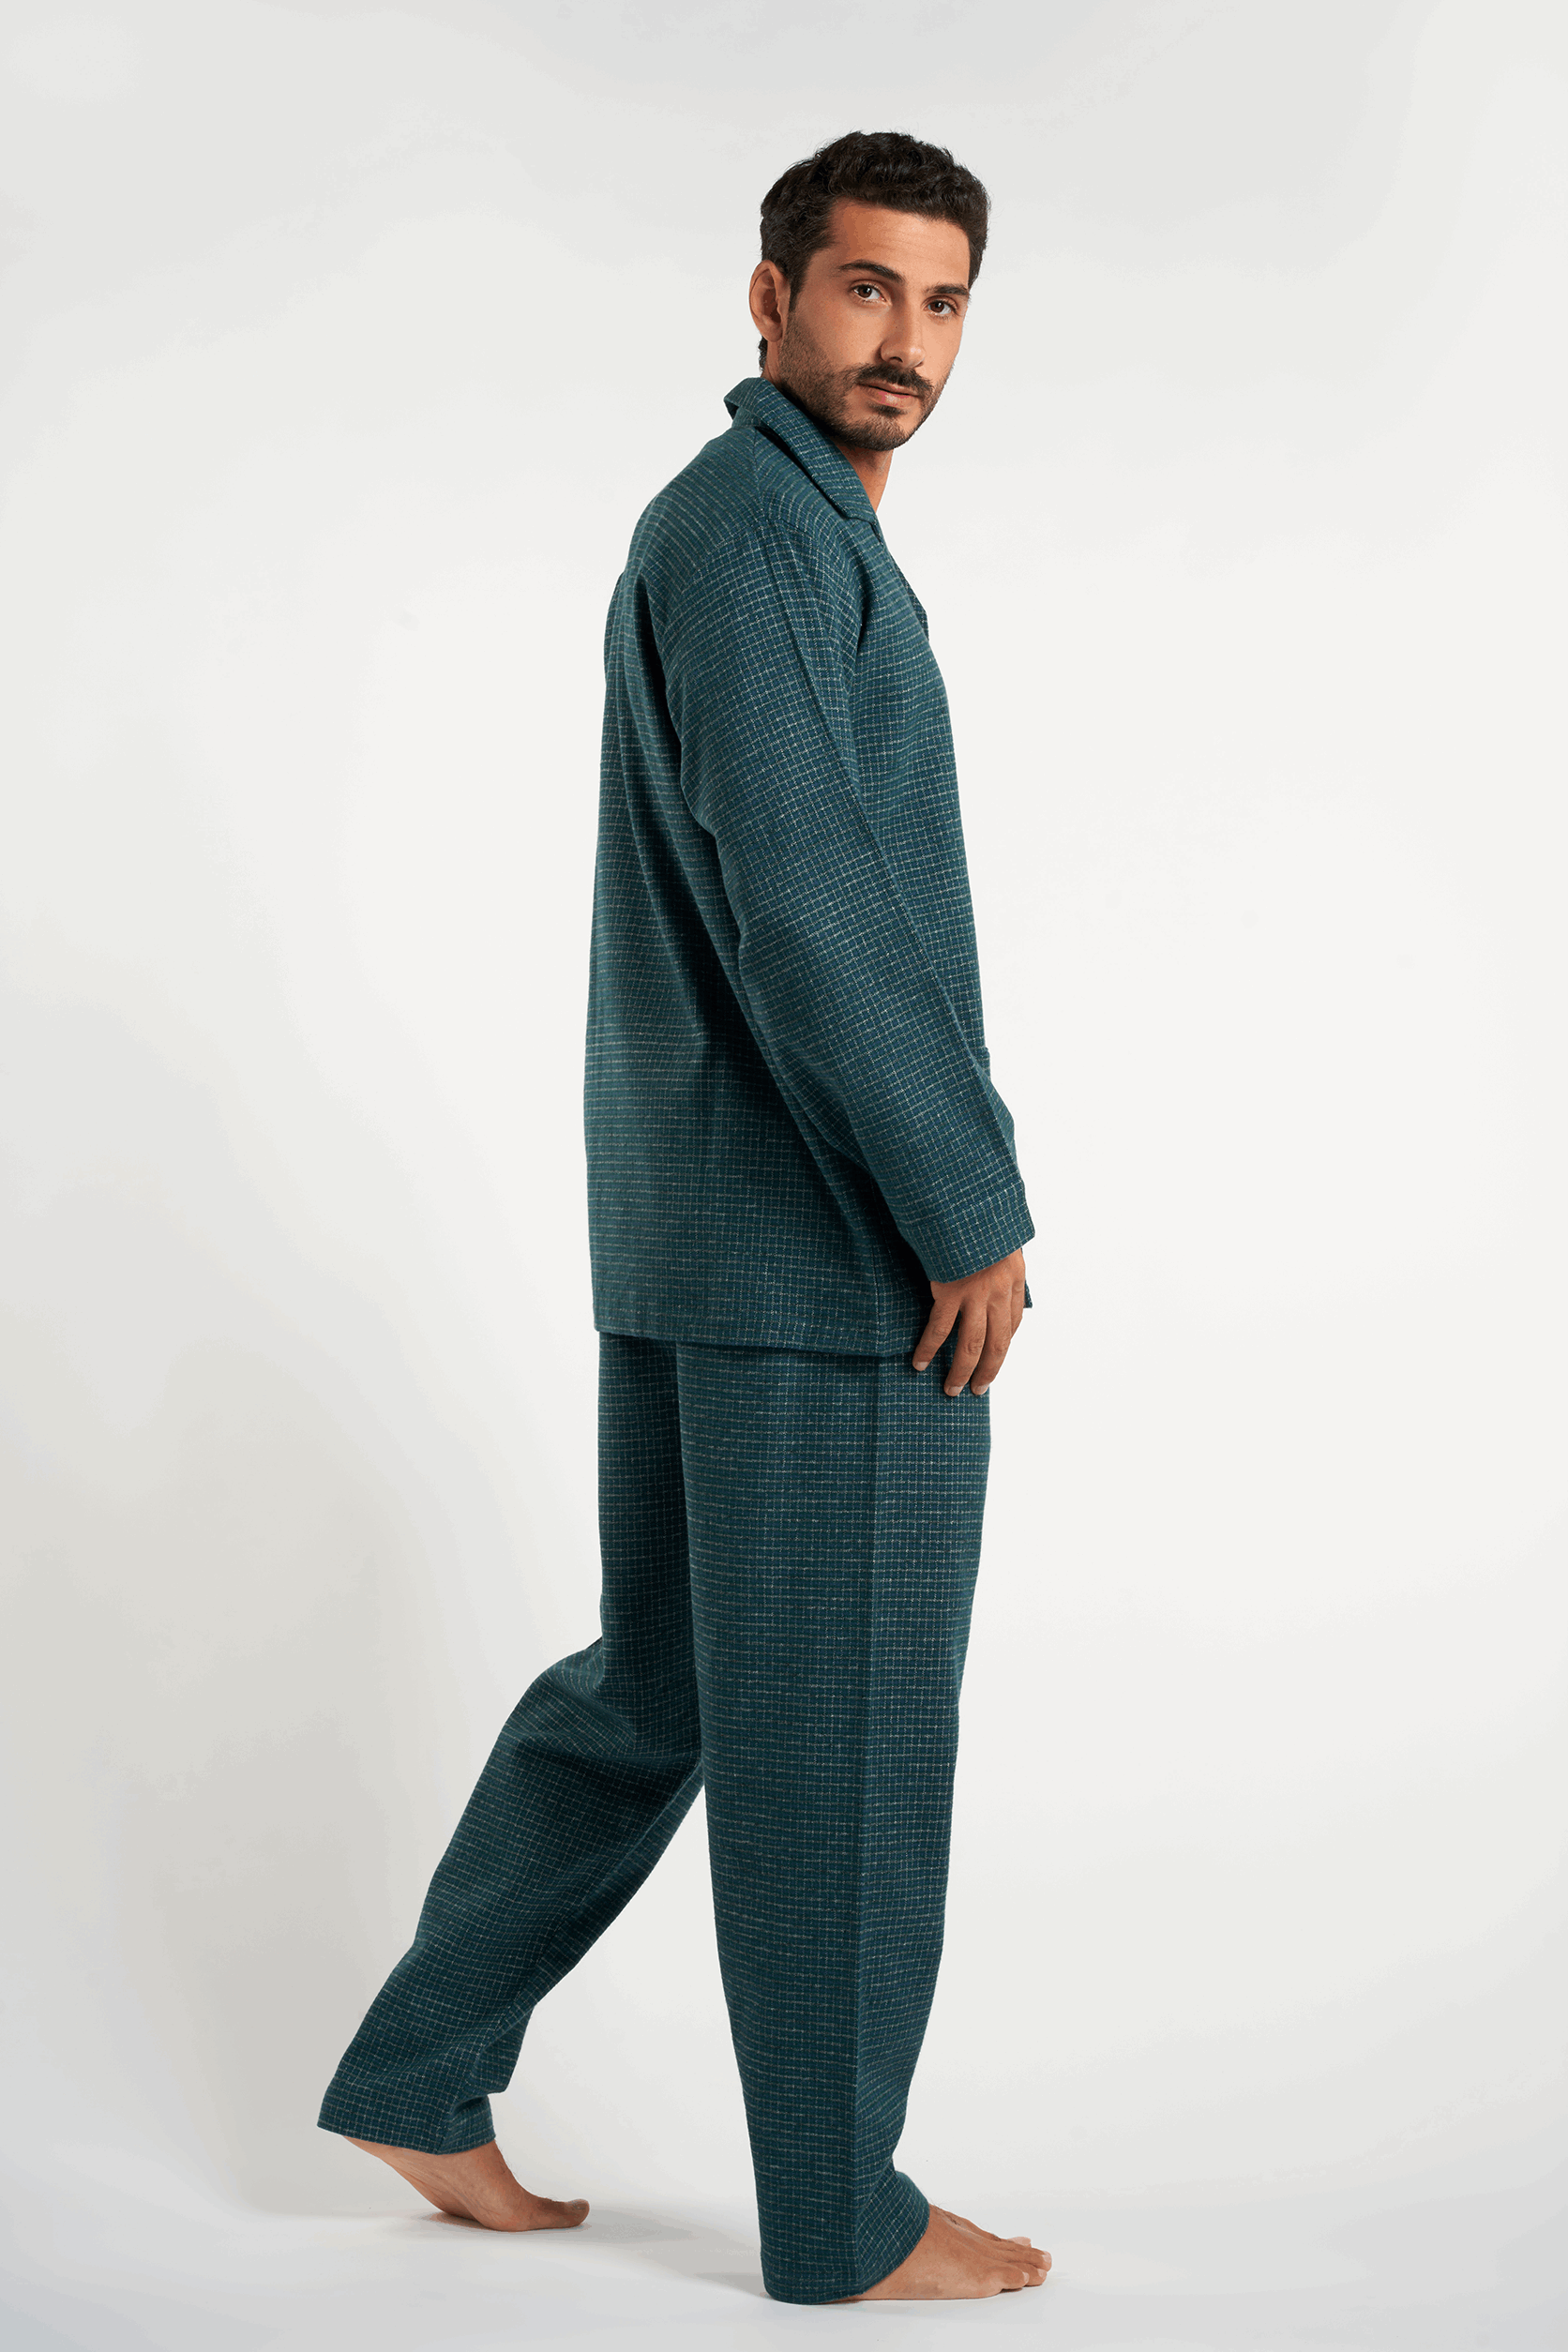 Green two-piece men's pajama(mpjlc-93)